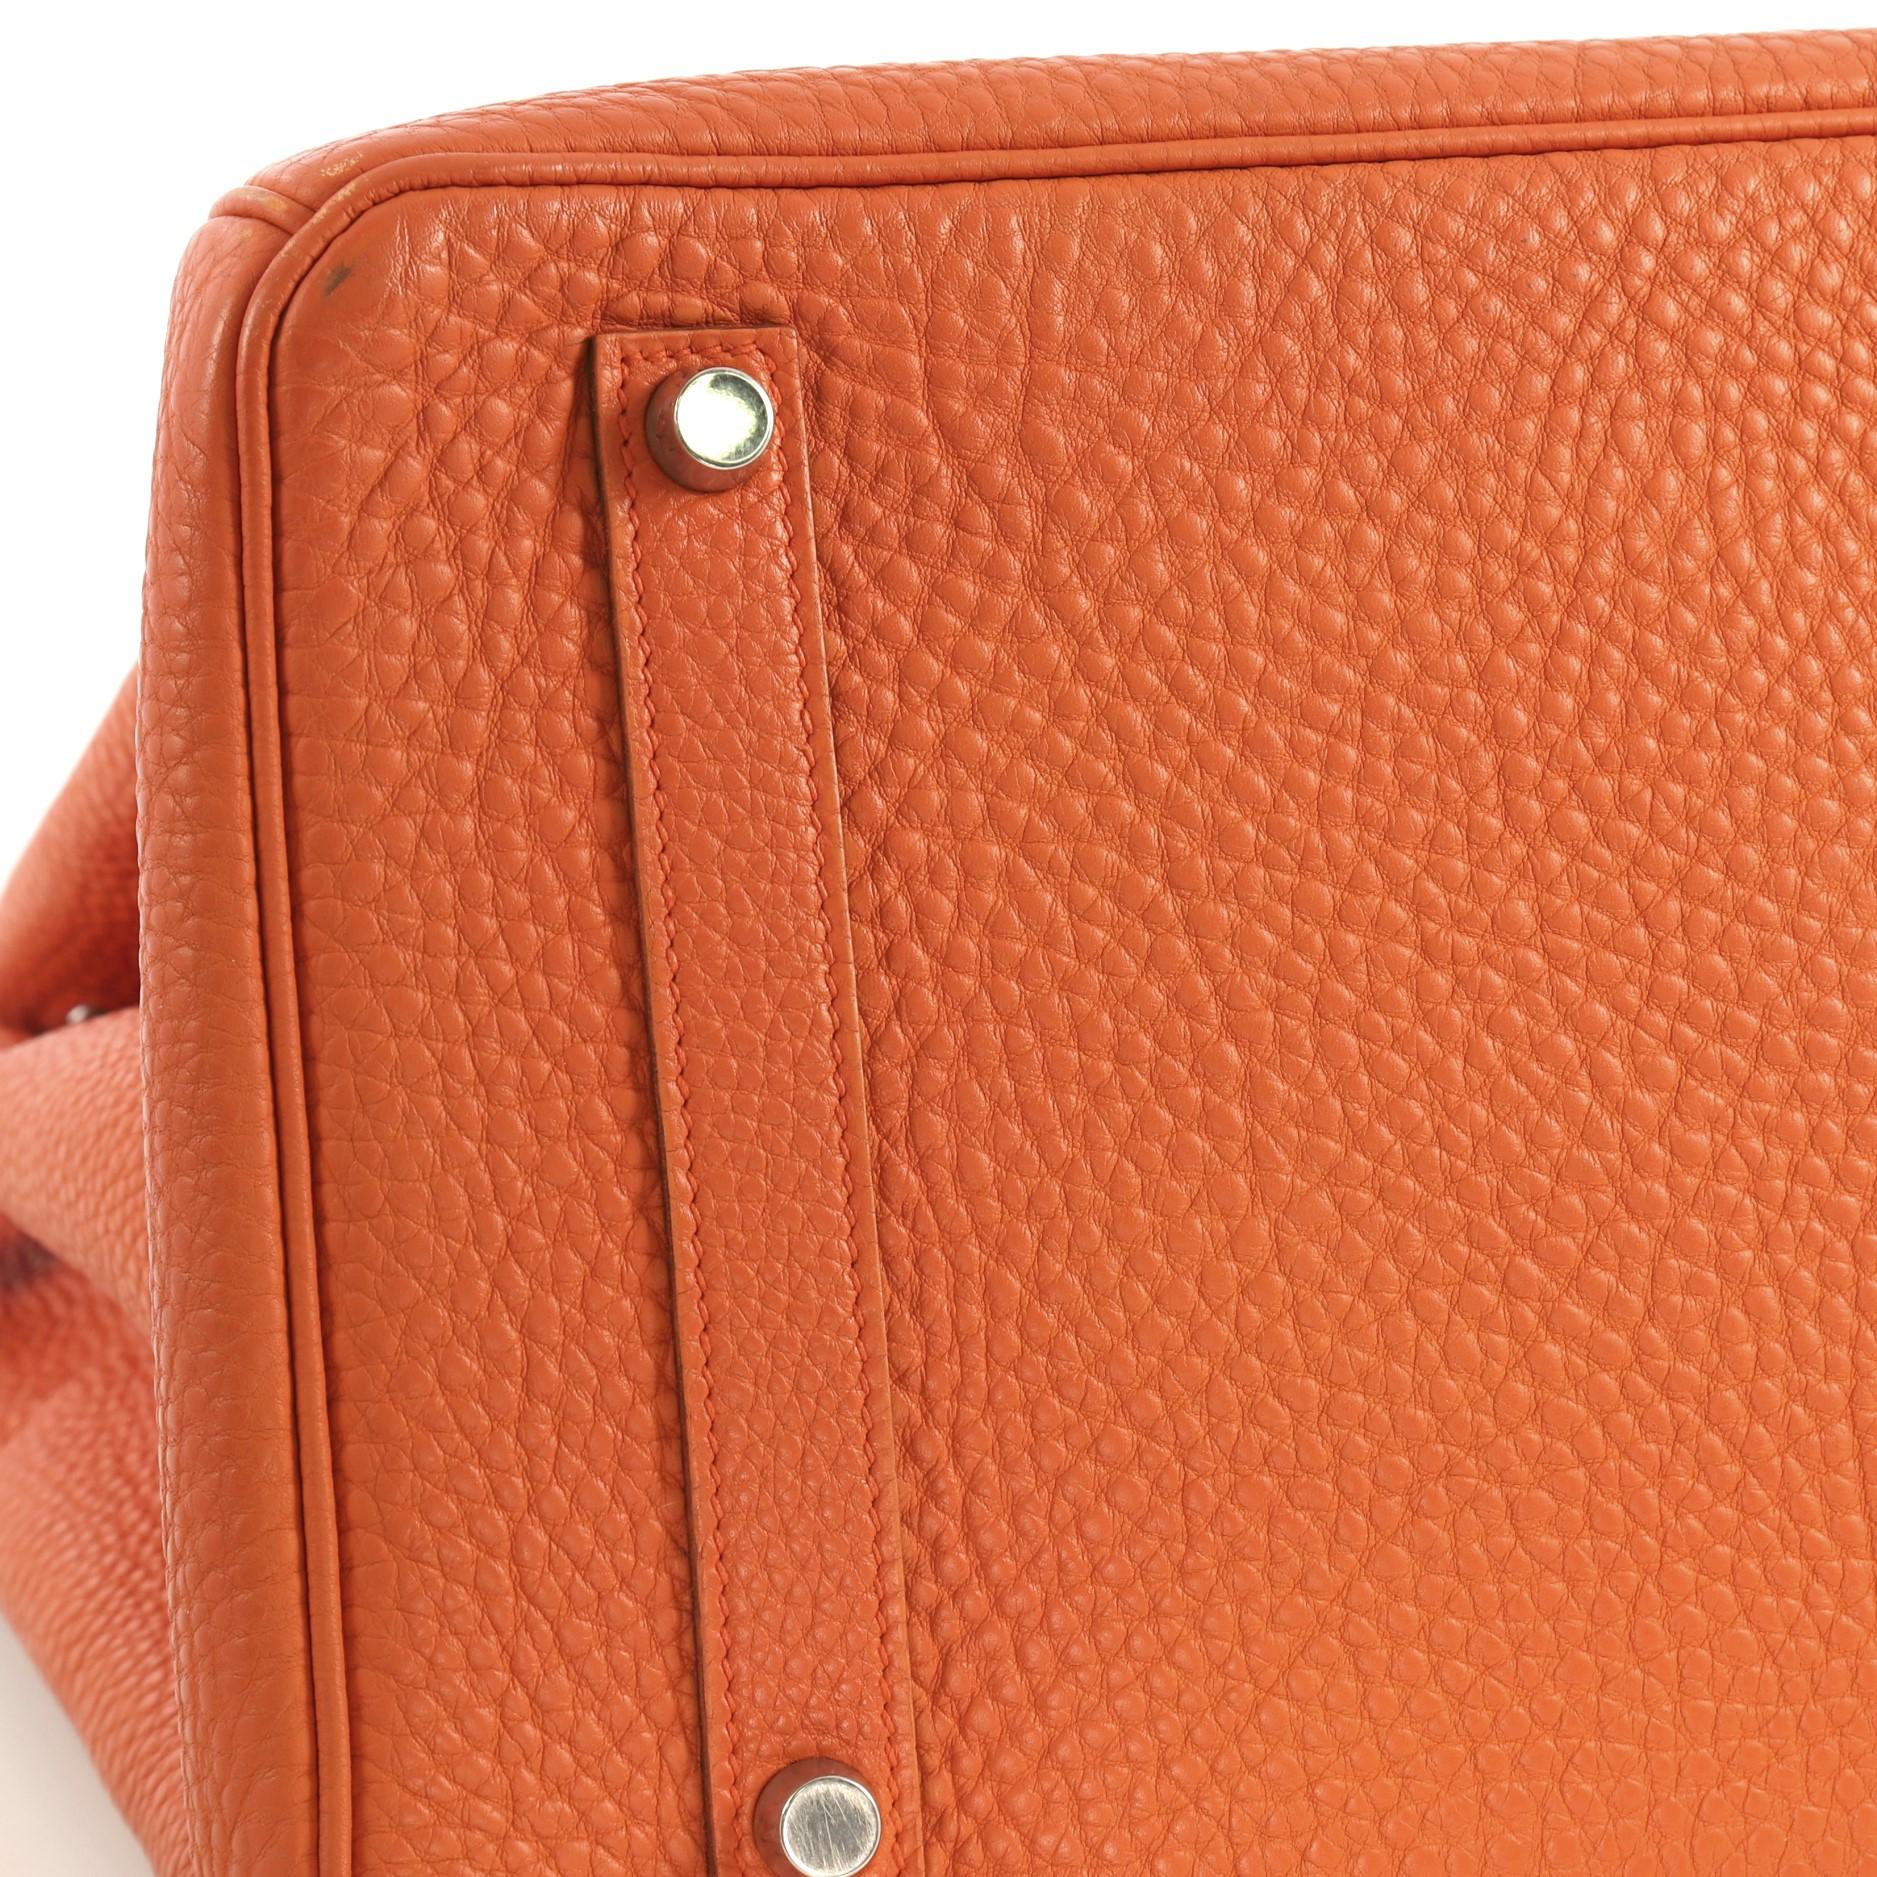 Hermes Birkin Handbag Orange H Togo with Palladium Hardware 35 6